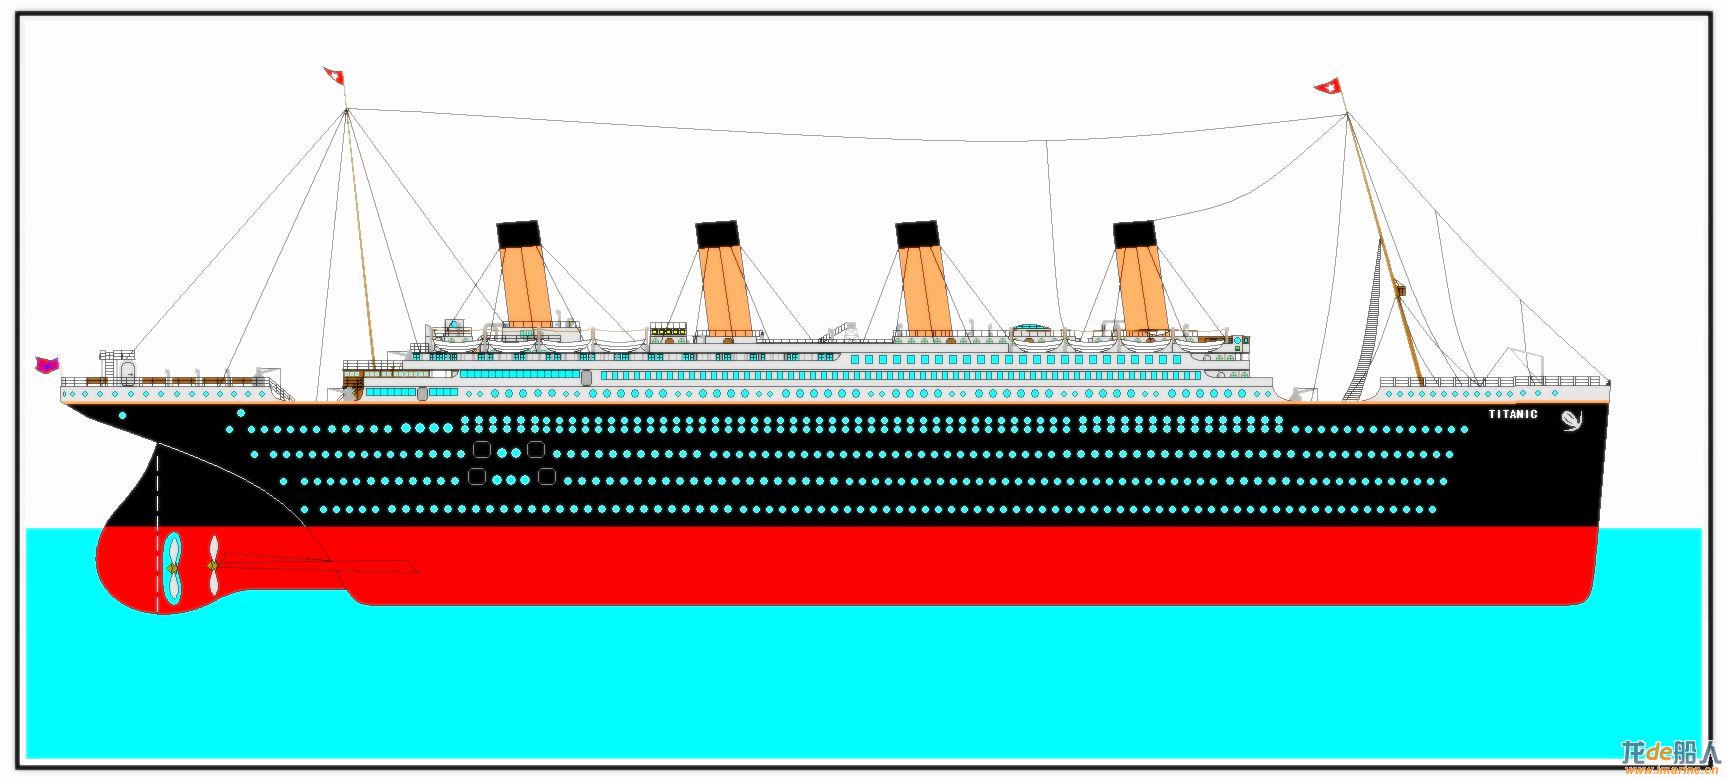 titanic泰坦尼克号总布置图